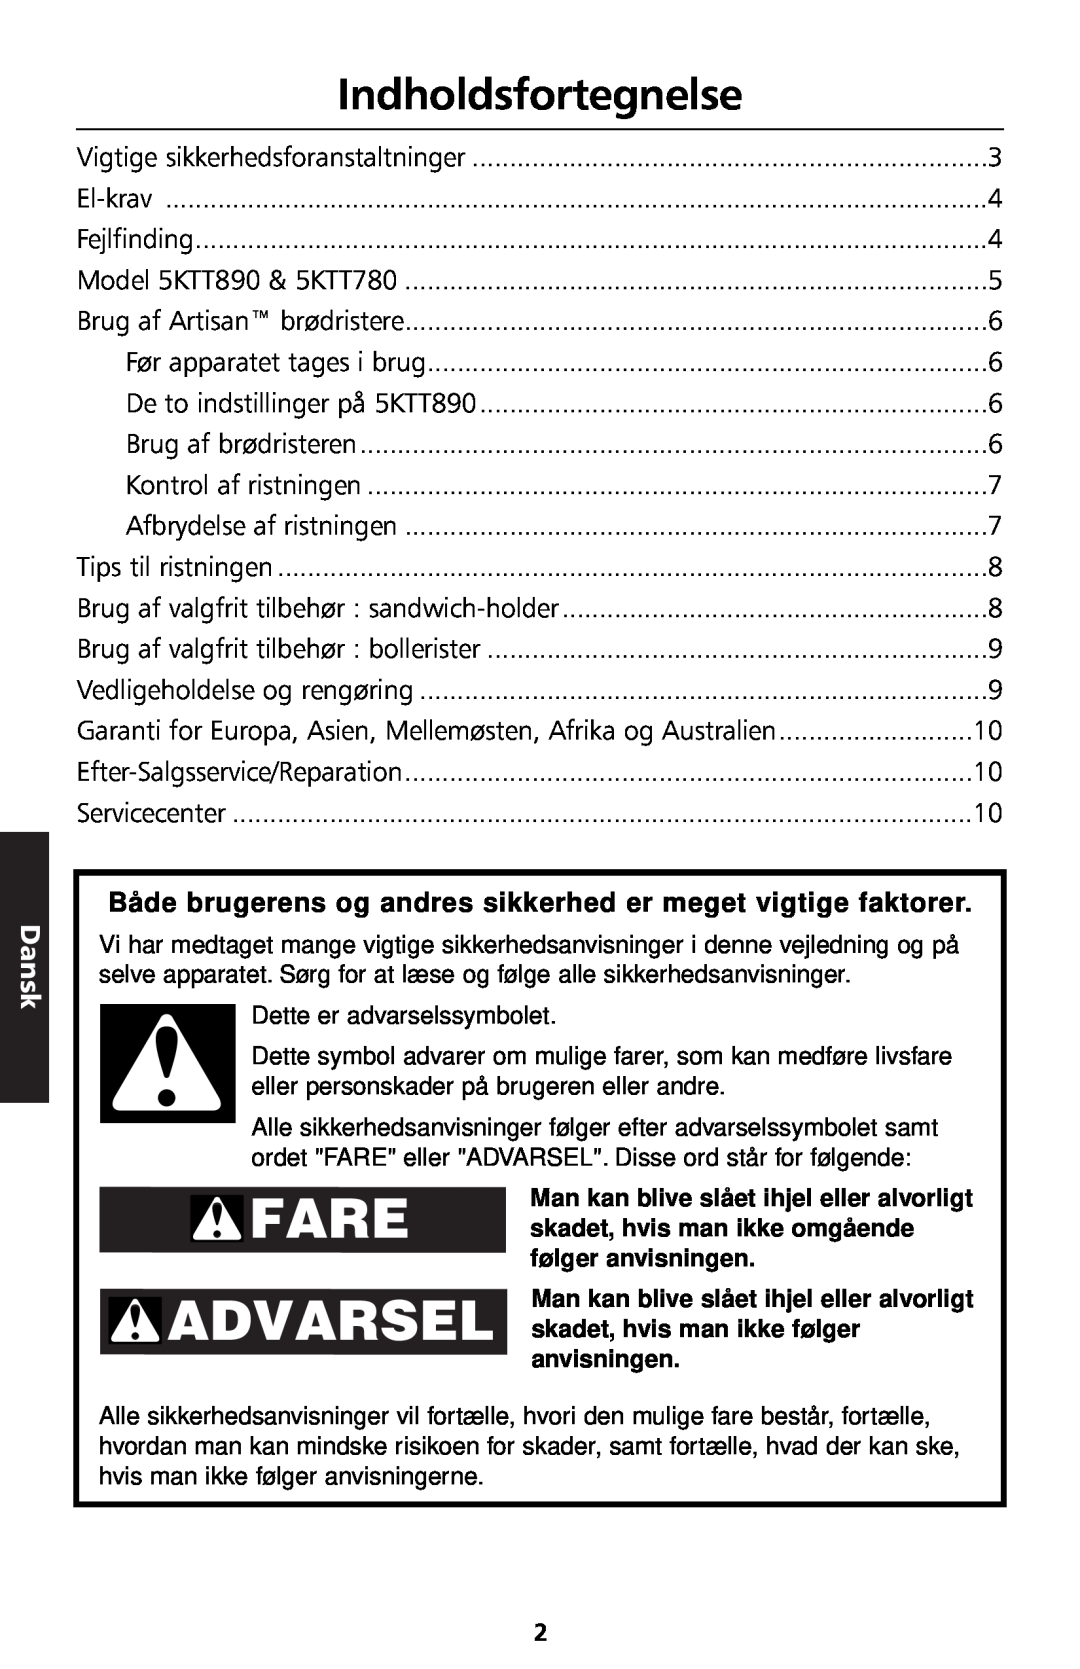 KitchenAid 5KTT890 manual Indholdsfortegnelse, Dansk 